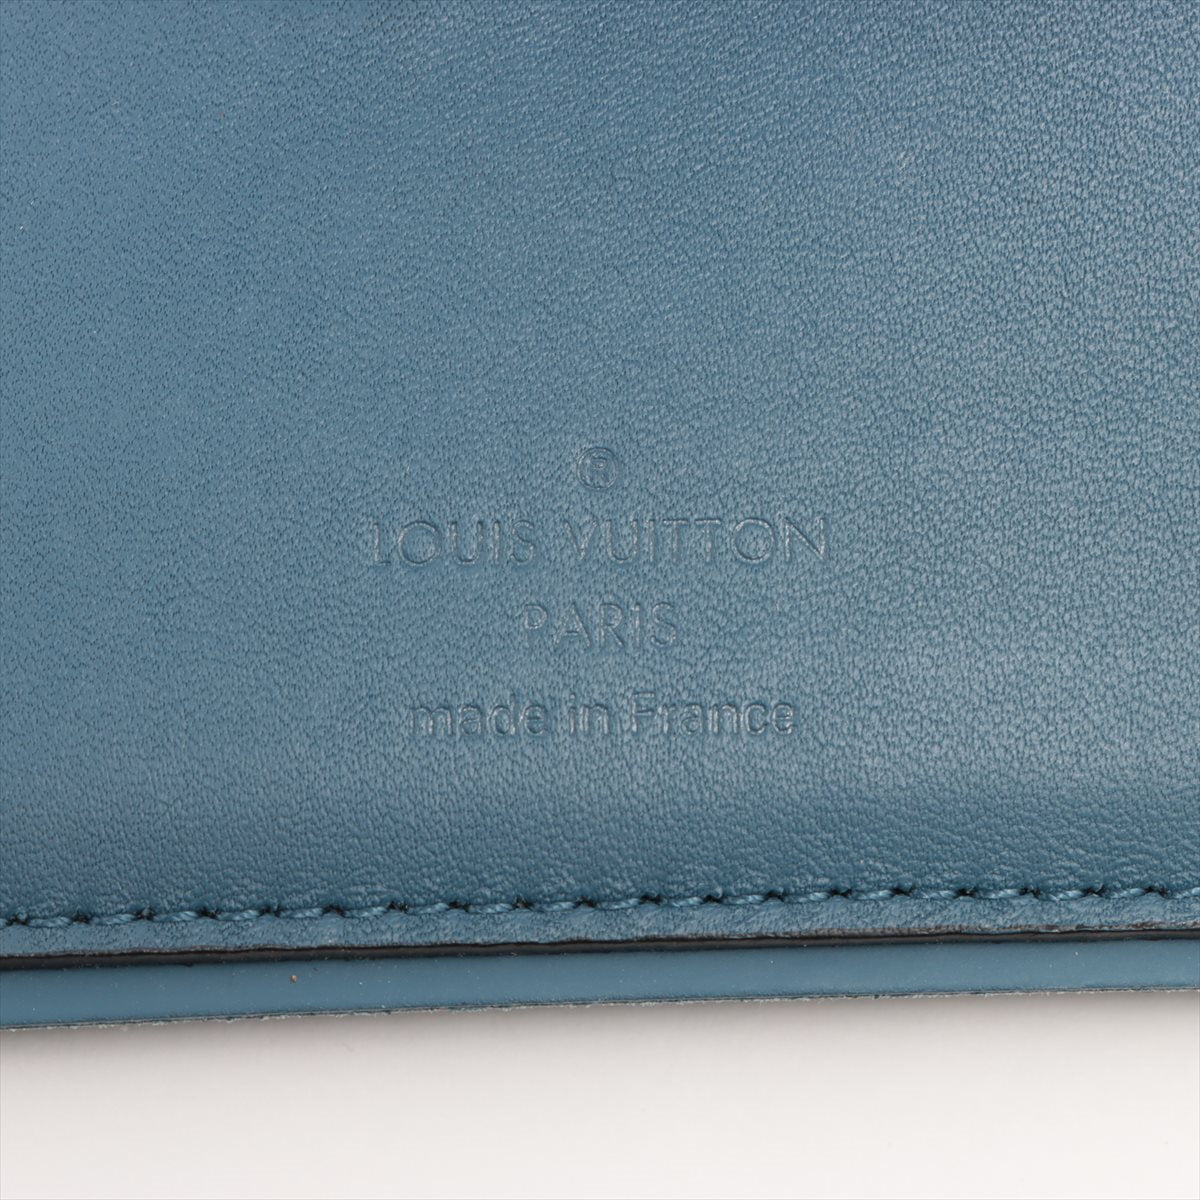 Louis Vuitton Damiere Portfolio Multiple N64434 Blue x Black Compact Wallet